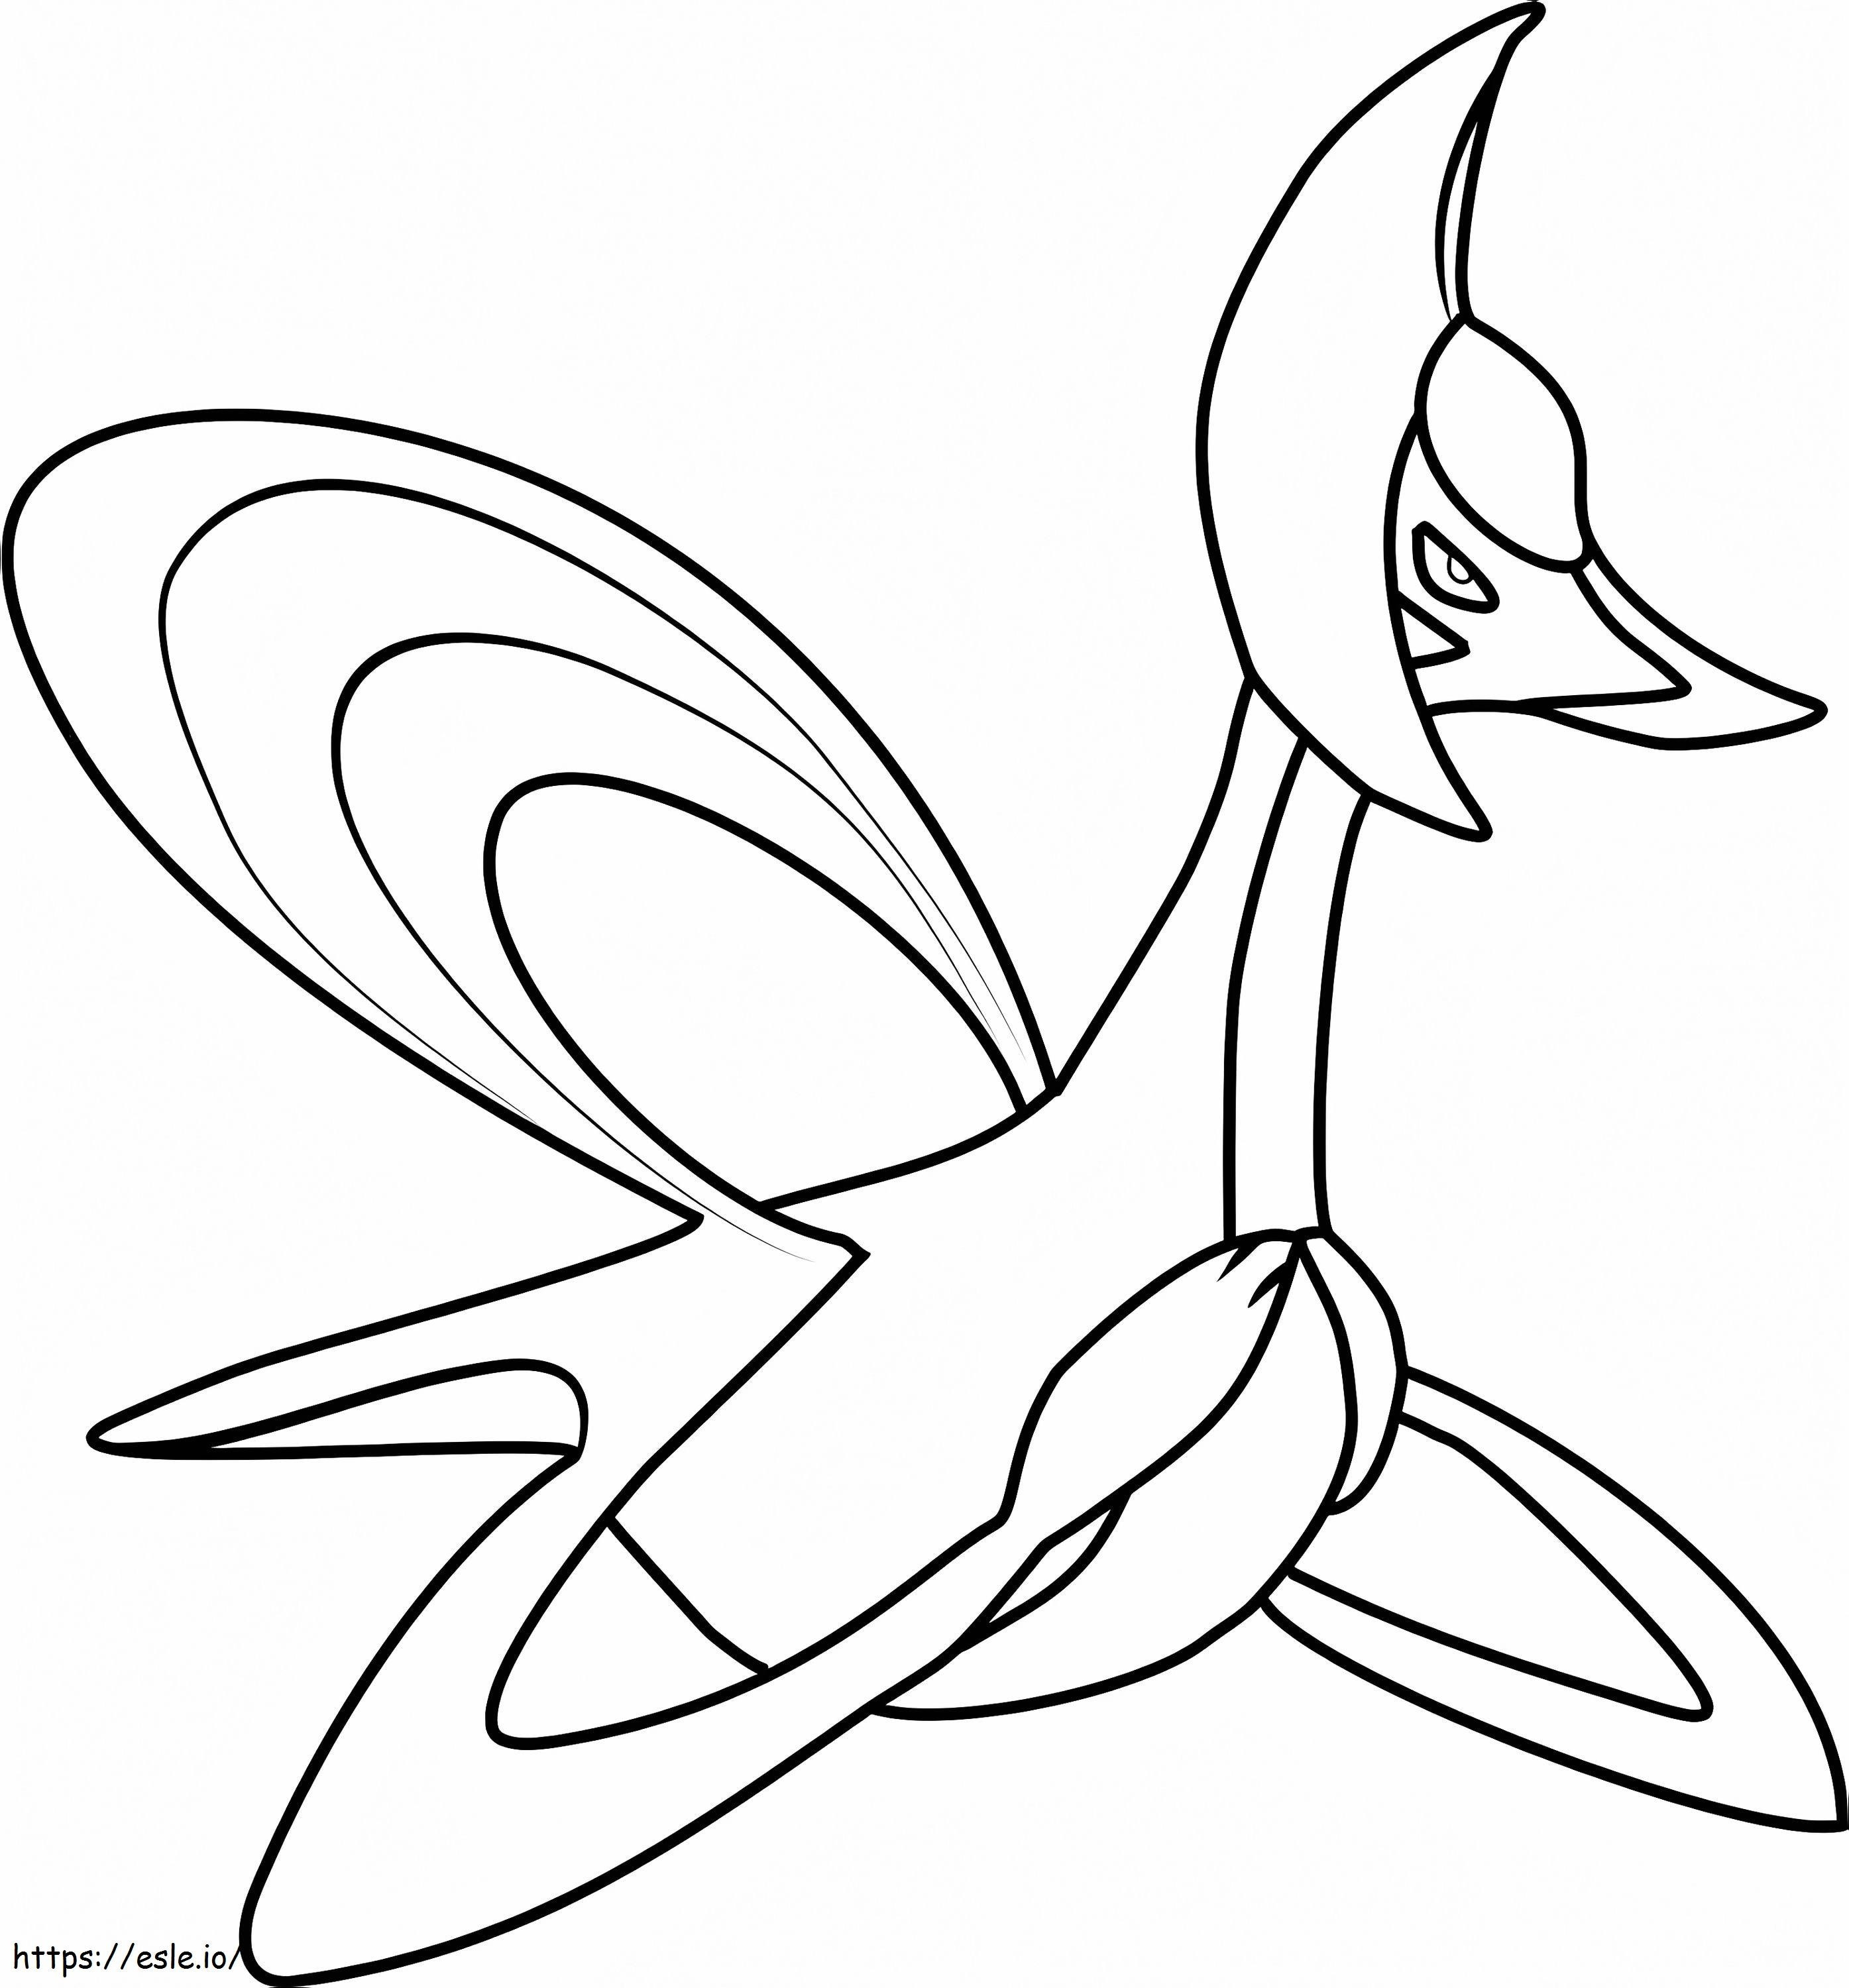 Coloriage Pokémon Cresselia à imprimer dessin